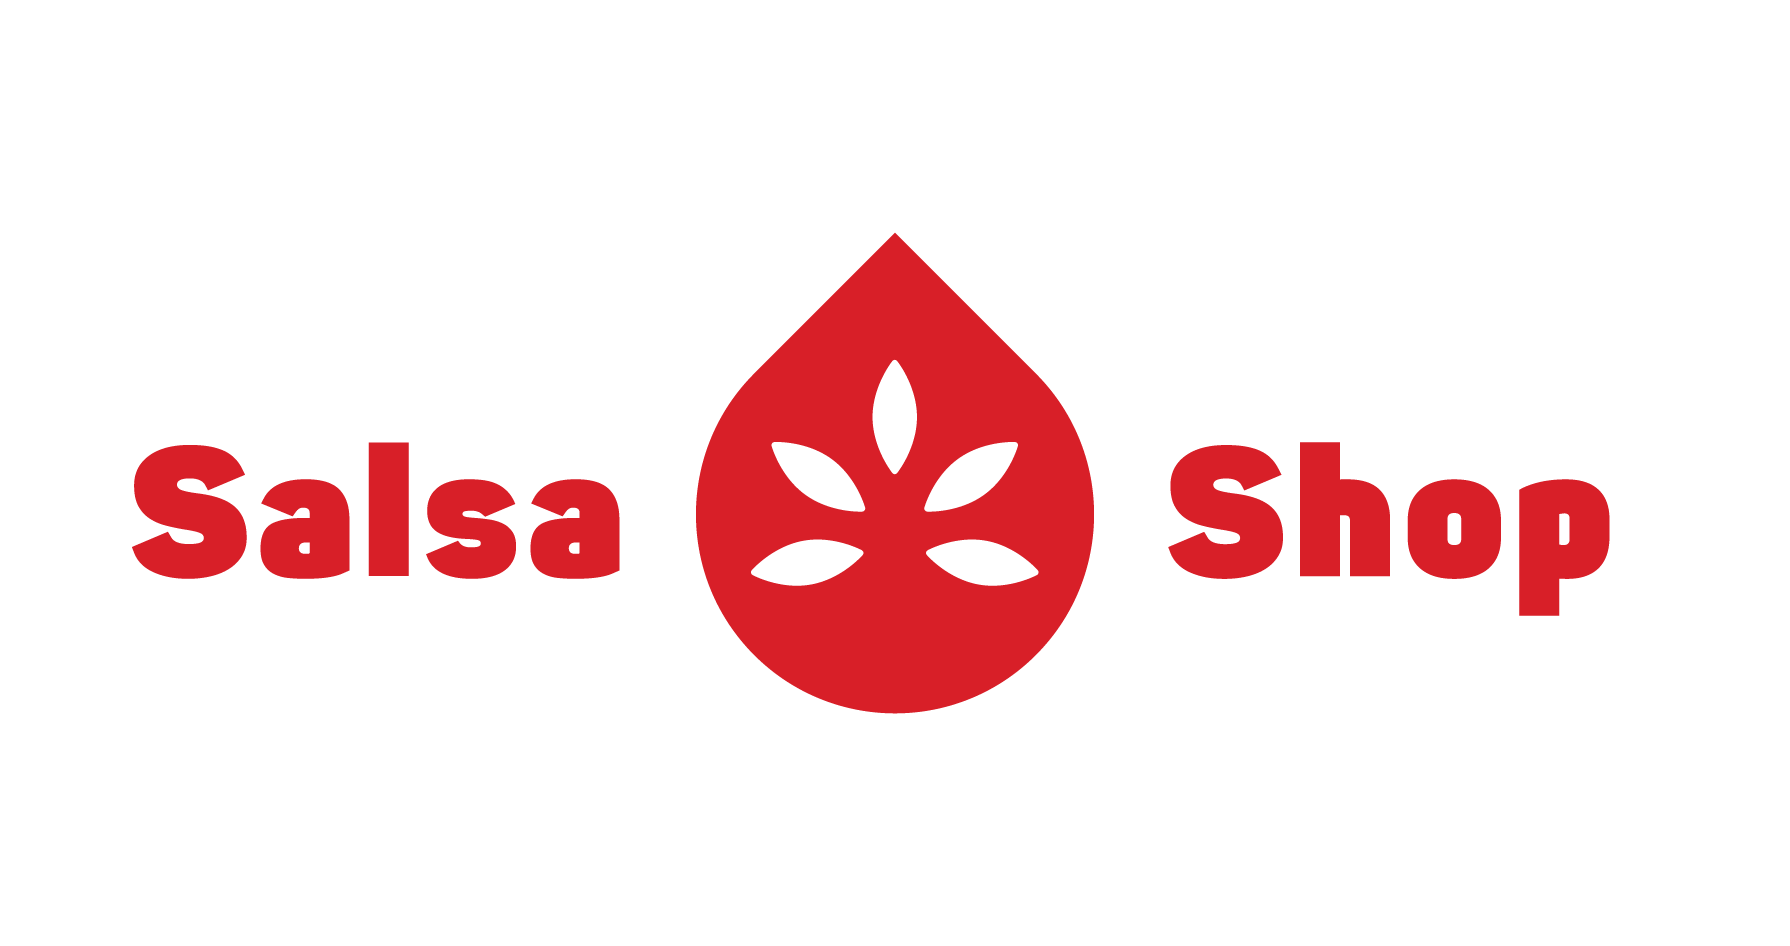 Salsa Shop is een Mexicaanse voedselketen die is opgericht in 2014 en inmiddels 13 vestigingen heeft. icon